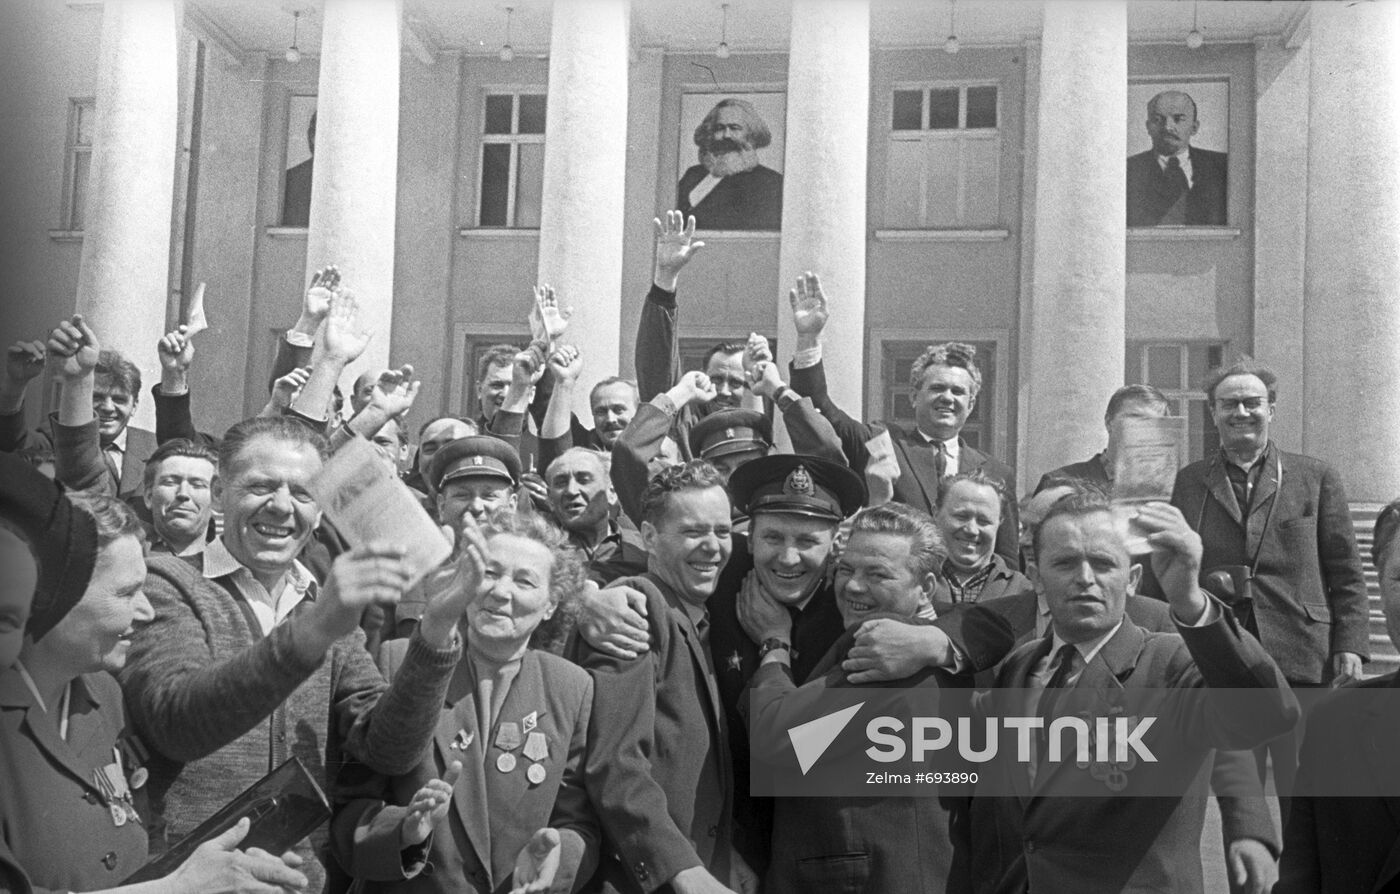 Partisans reunion in April 1966